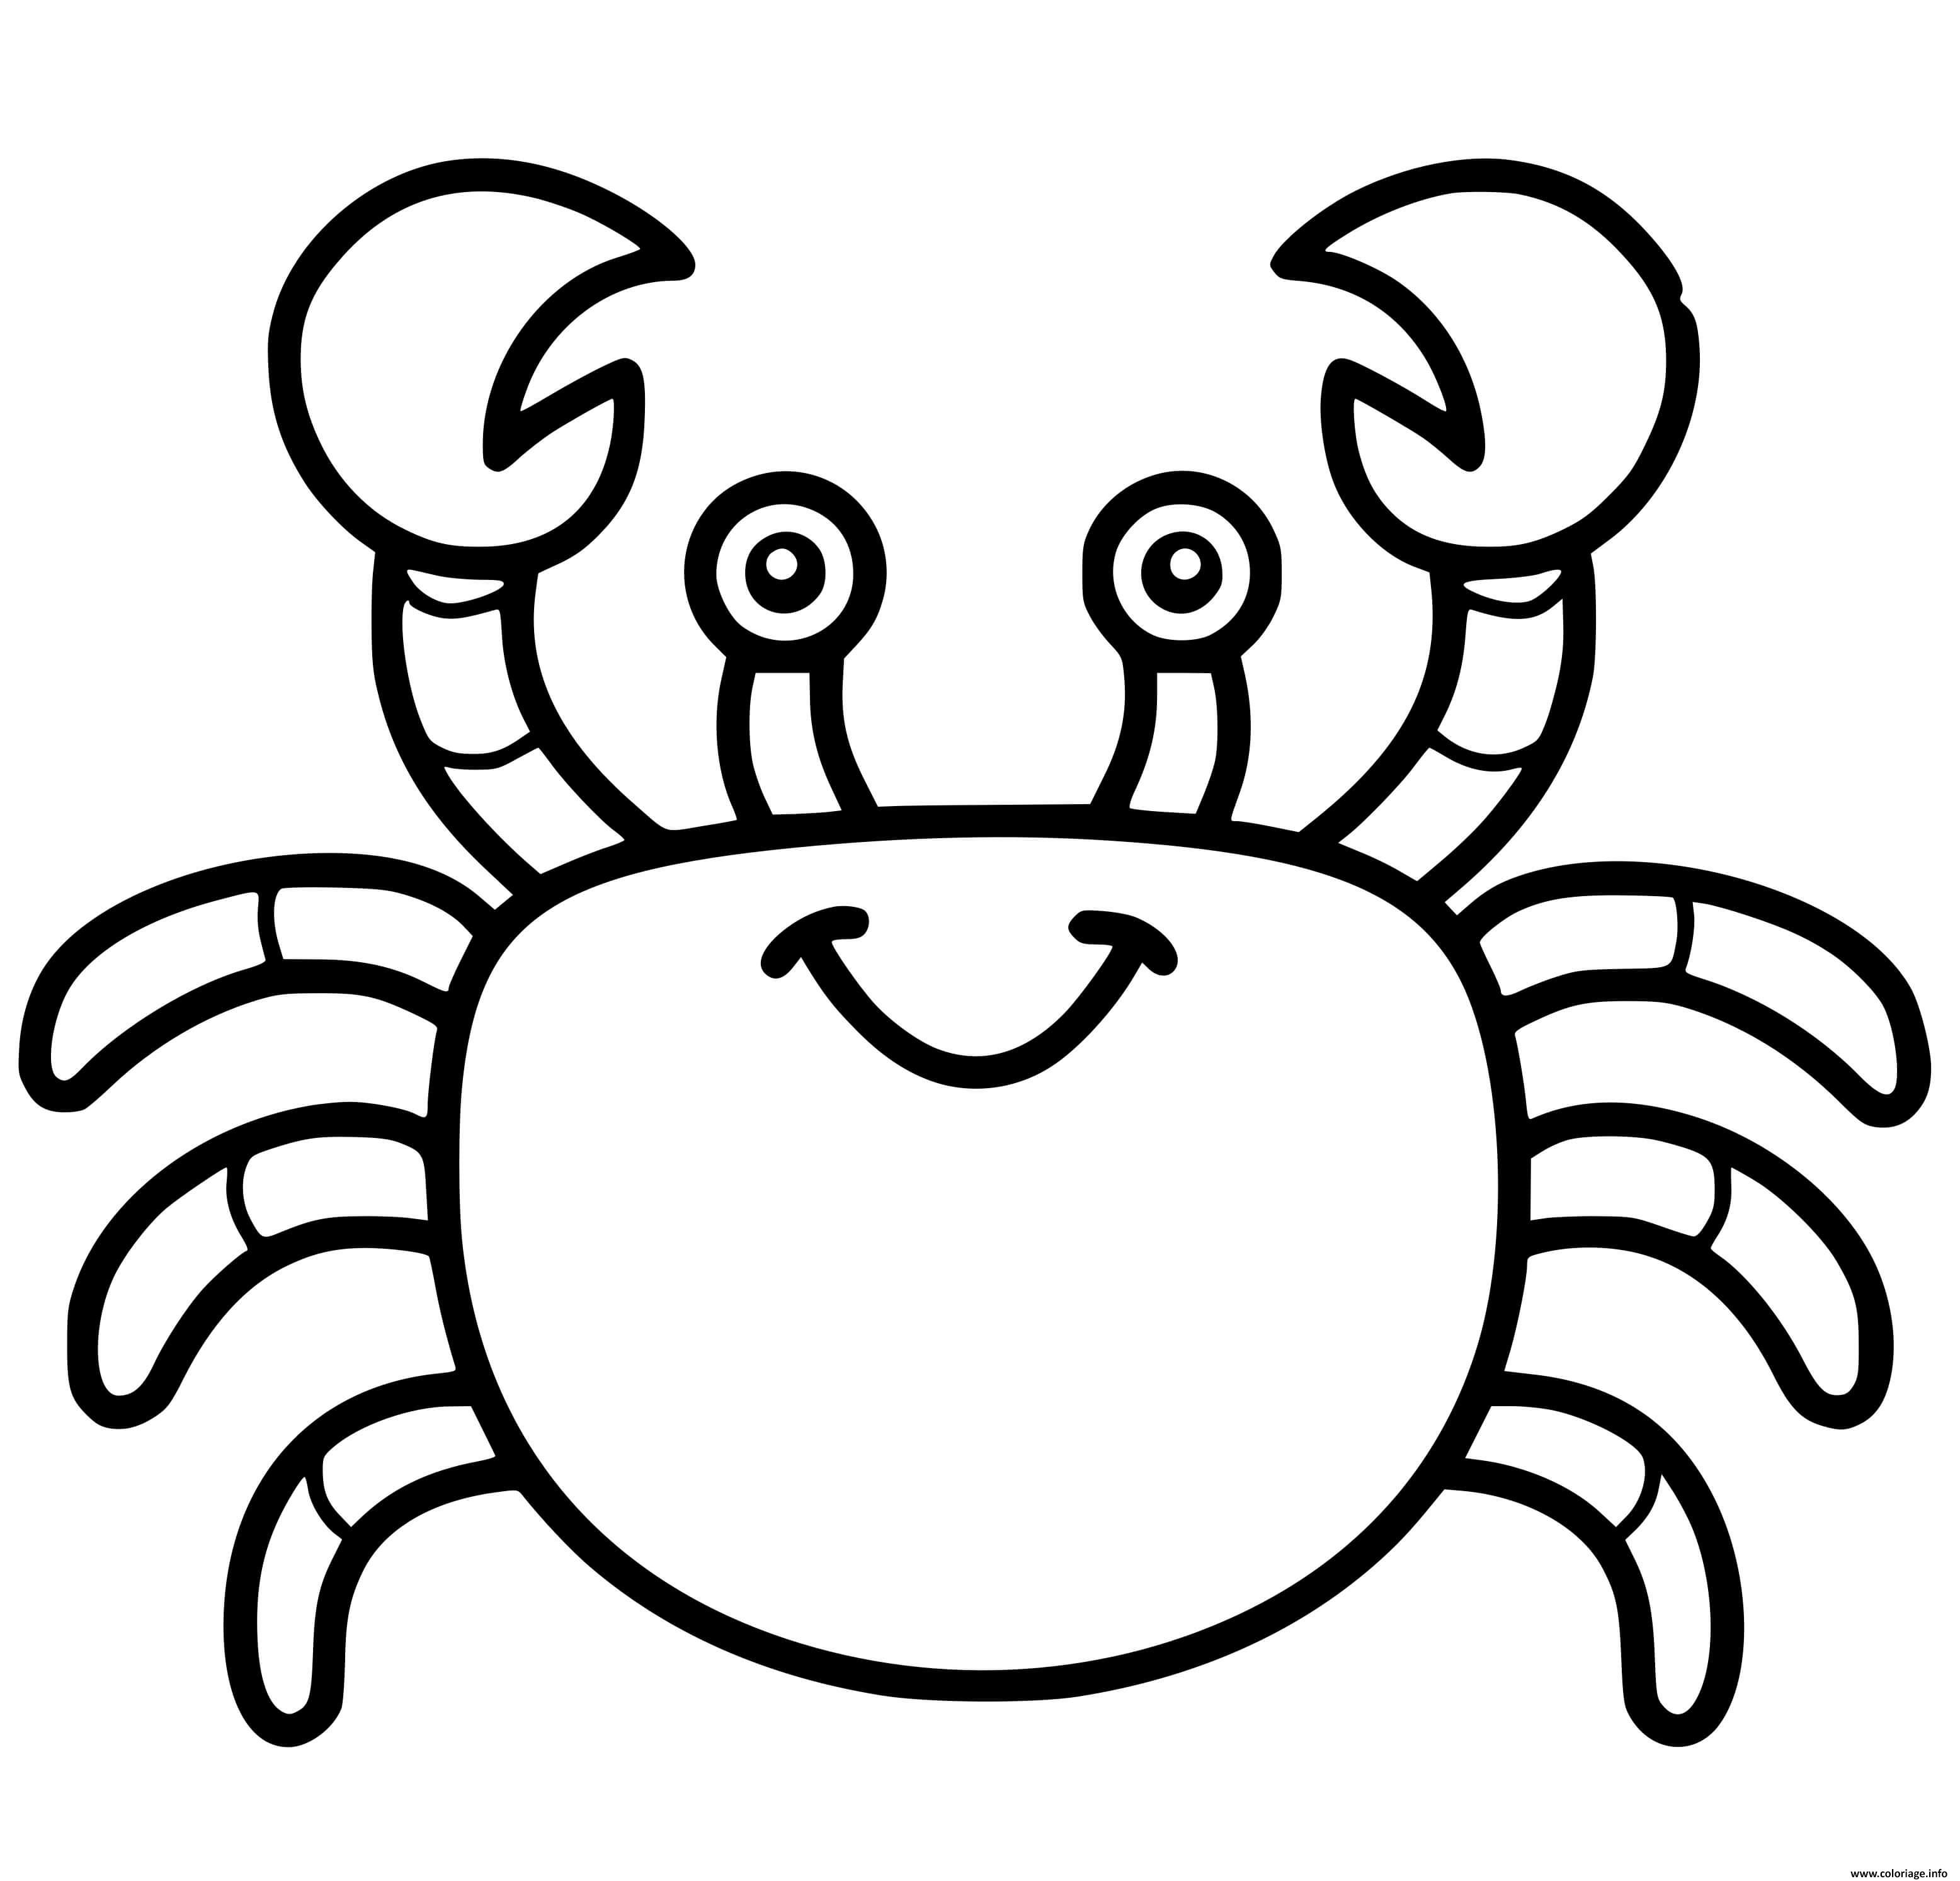 Dessin crabe facile maternelle Coloriage Gratuit à Imprimer